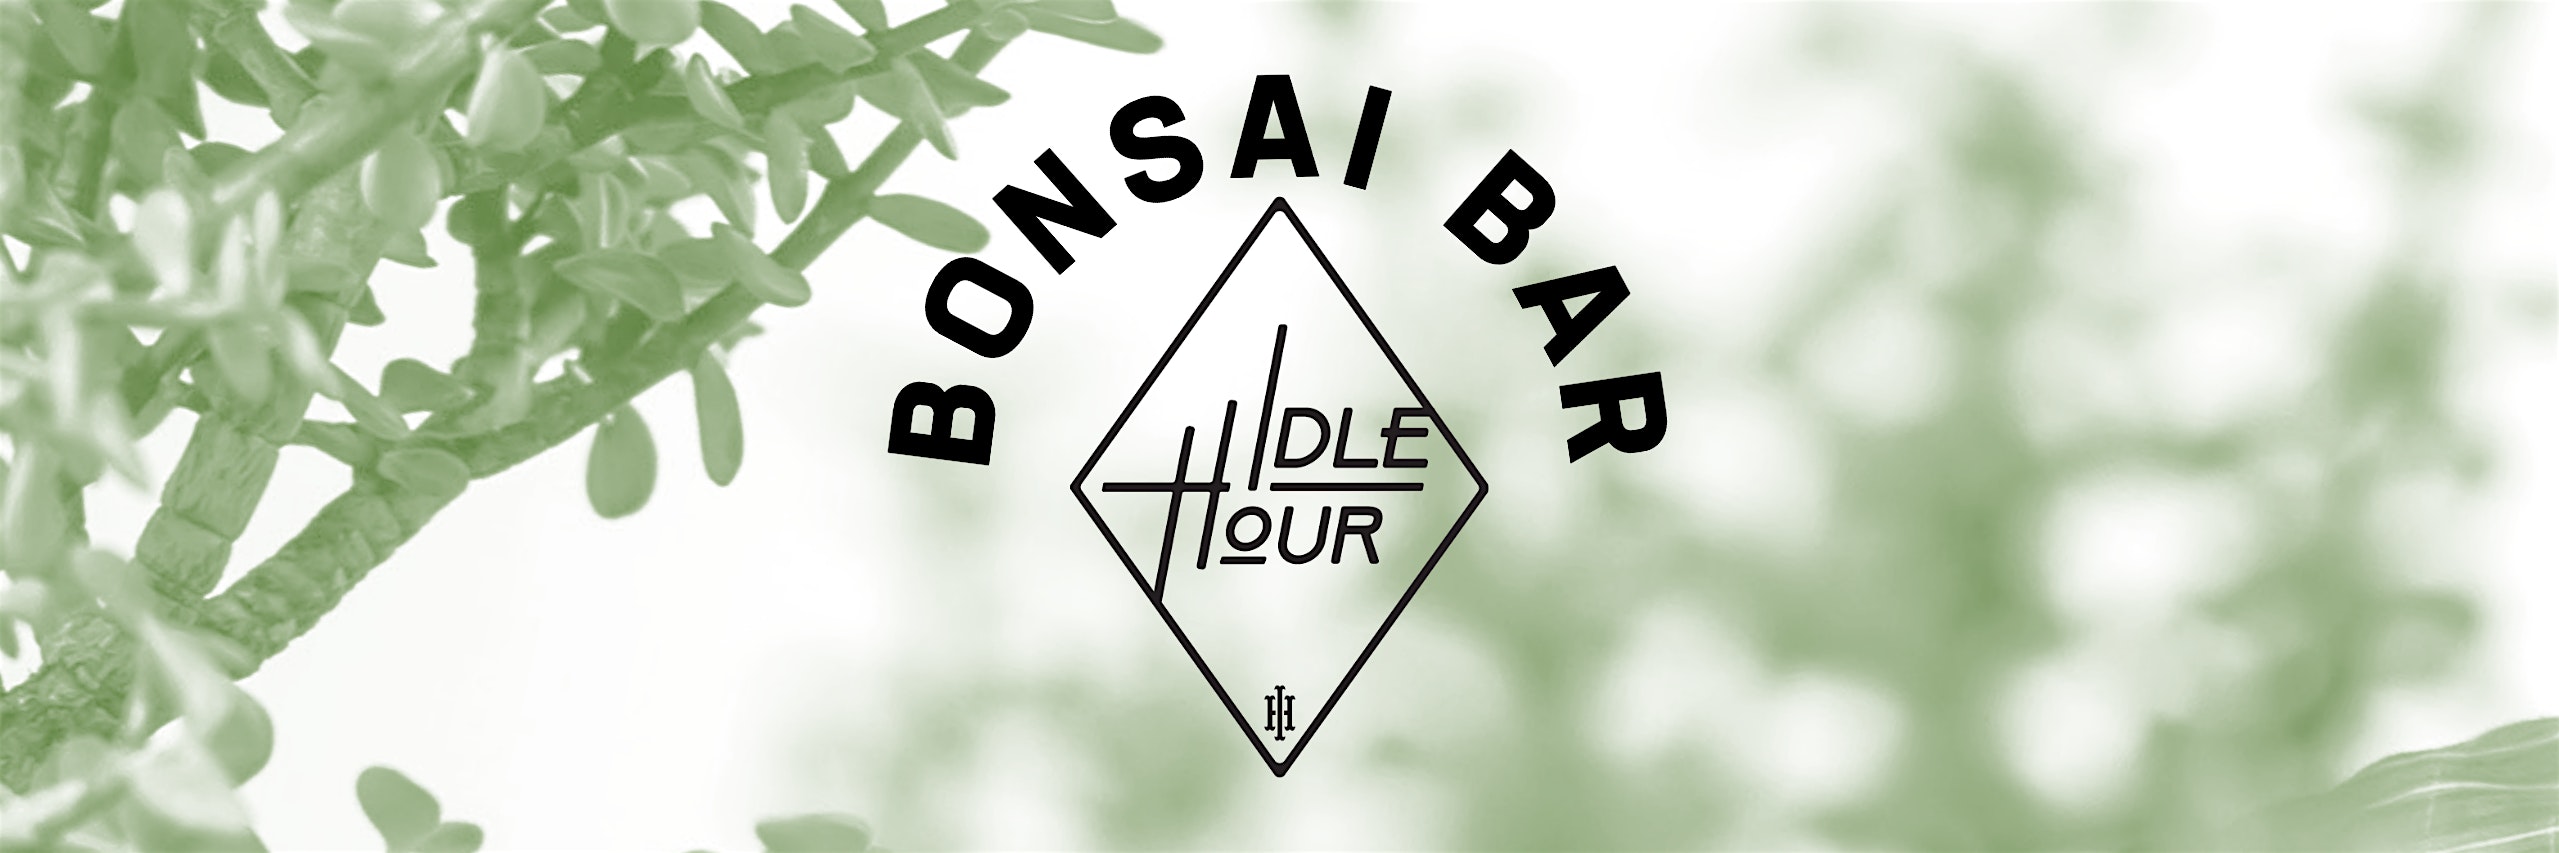 Bonsai Bar @ Idle Hour